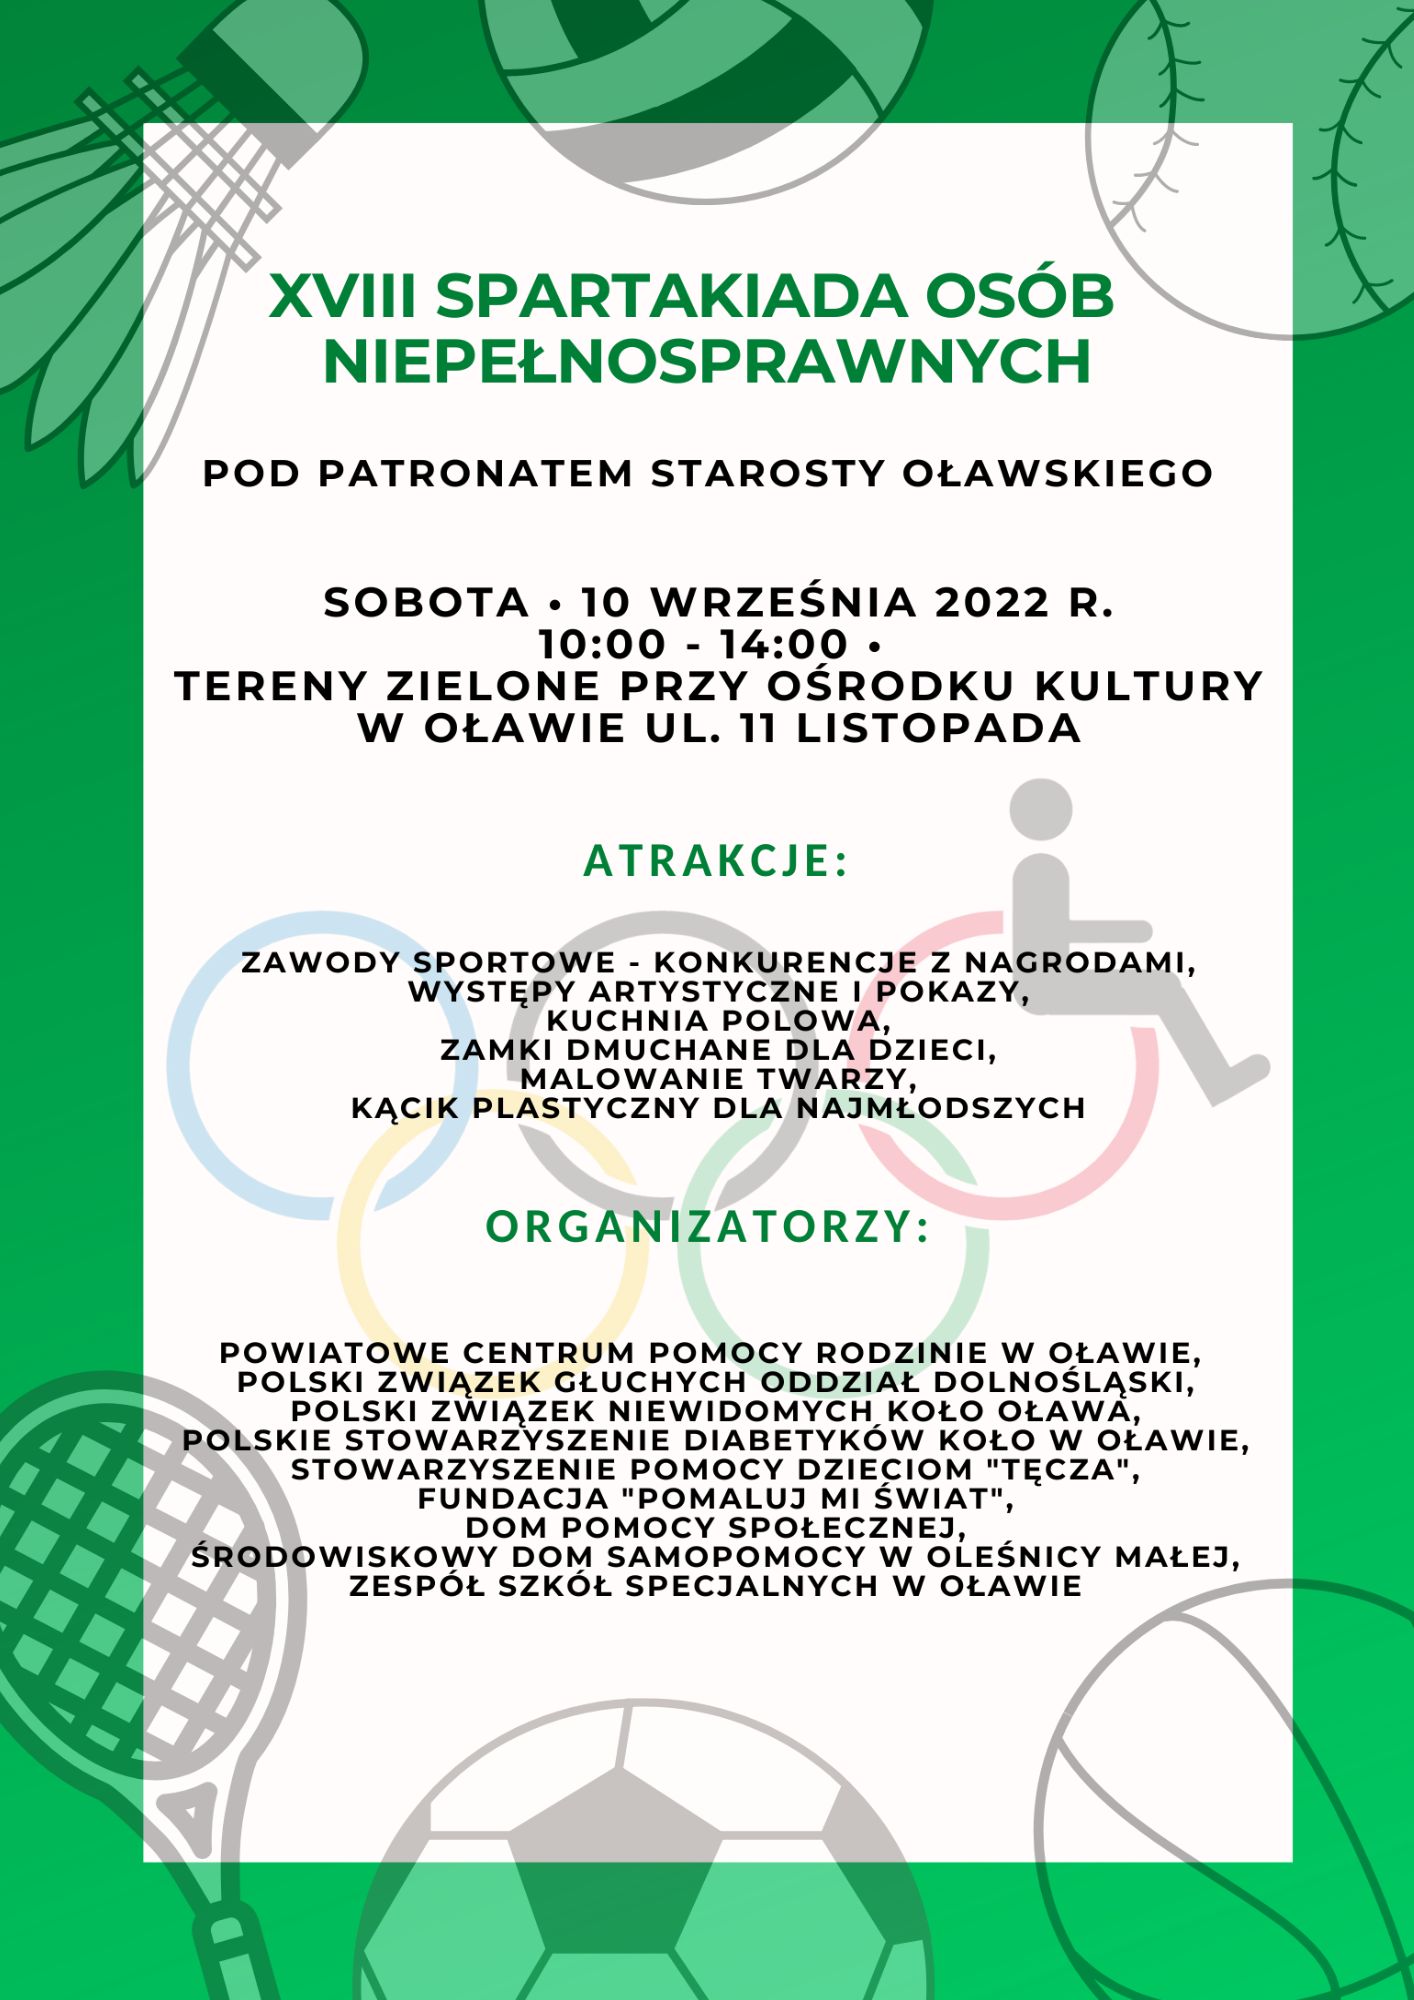 Grafika: plakat spartakiady, na biało - zielonym tle, dookoła różne sprzęty sportowe, wymieniono atrakcje oraz organizatorów